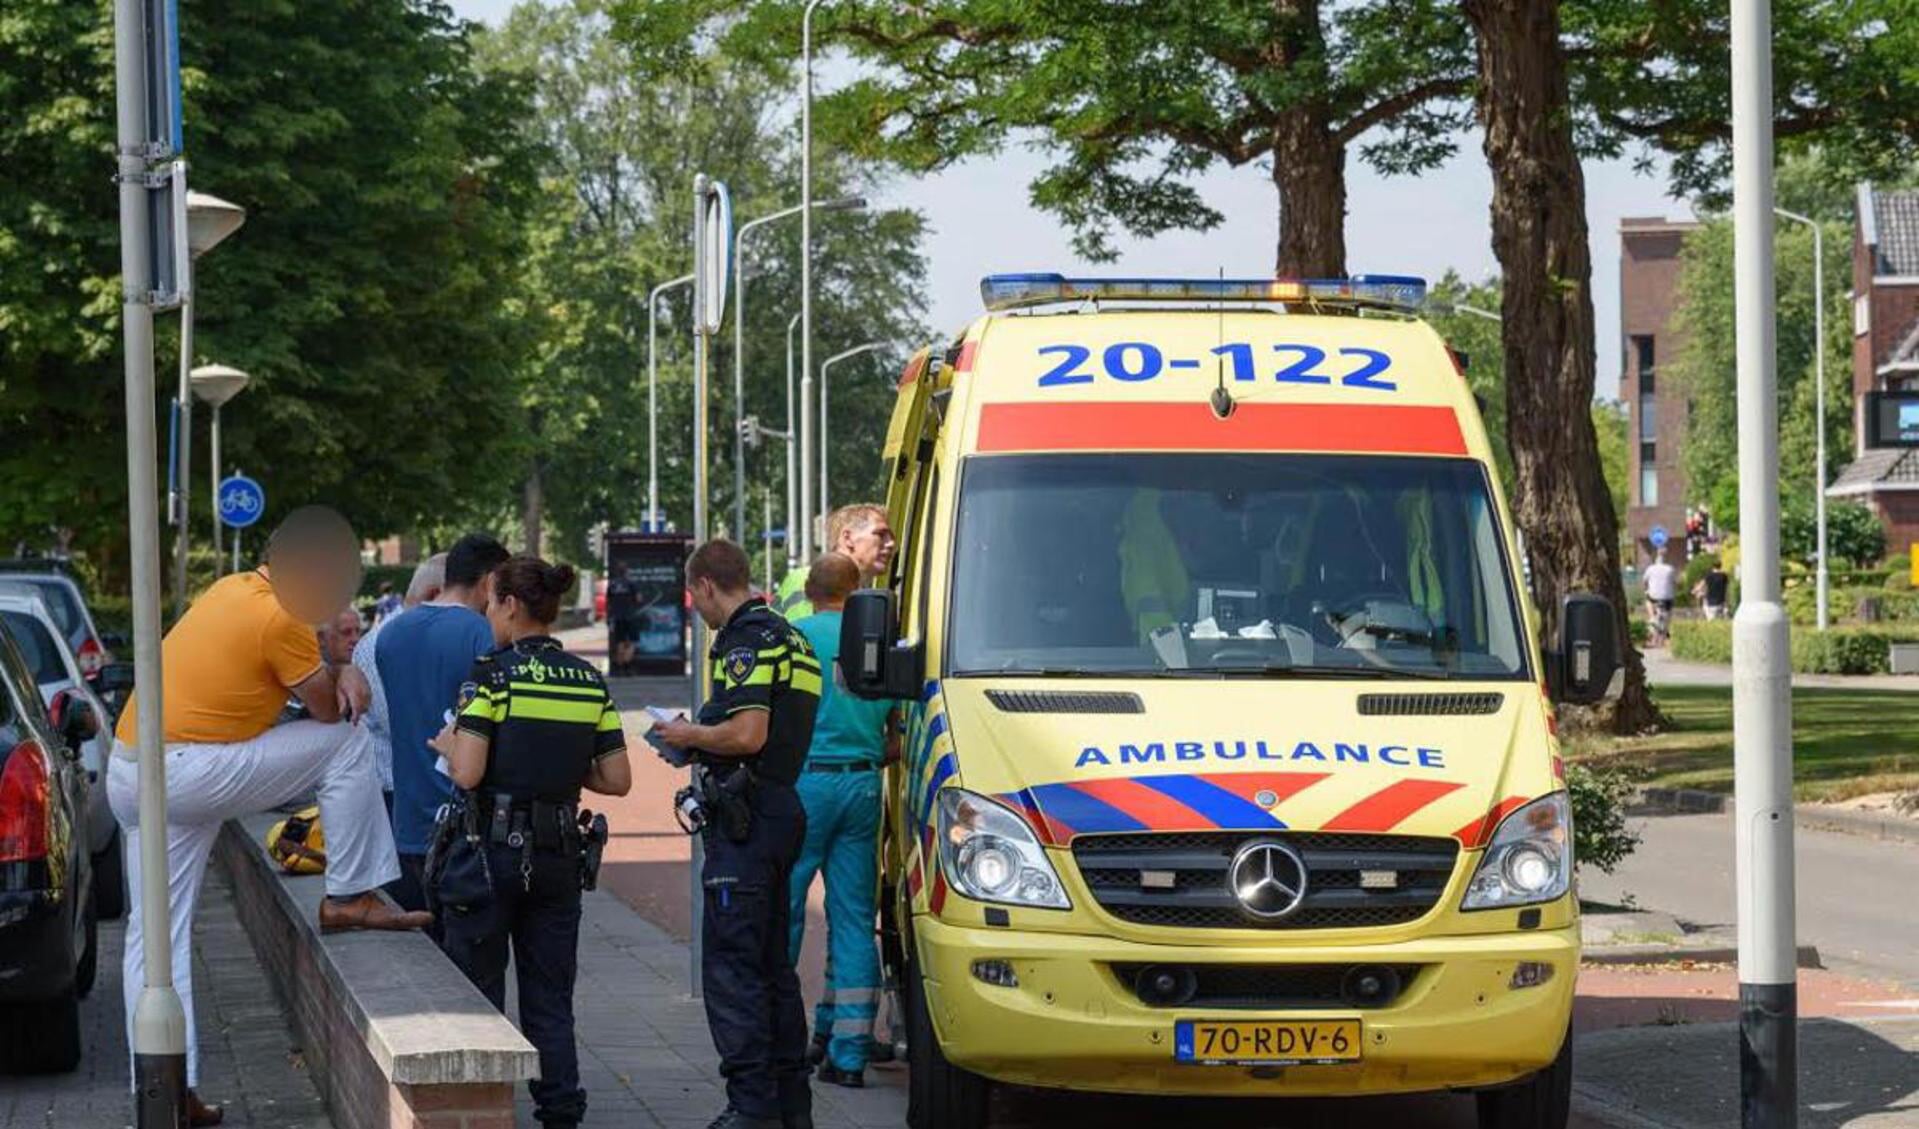 De ambulance zal de gewonde fietsster neer het ziekenhuis vervoeren.